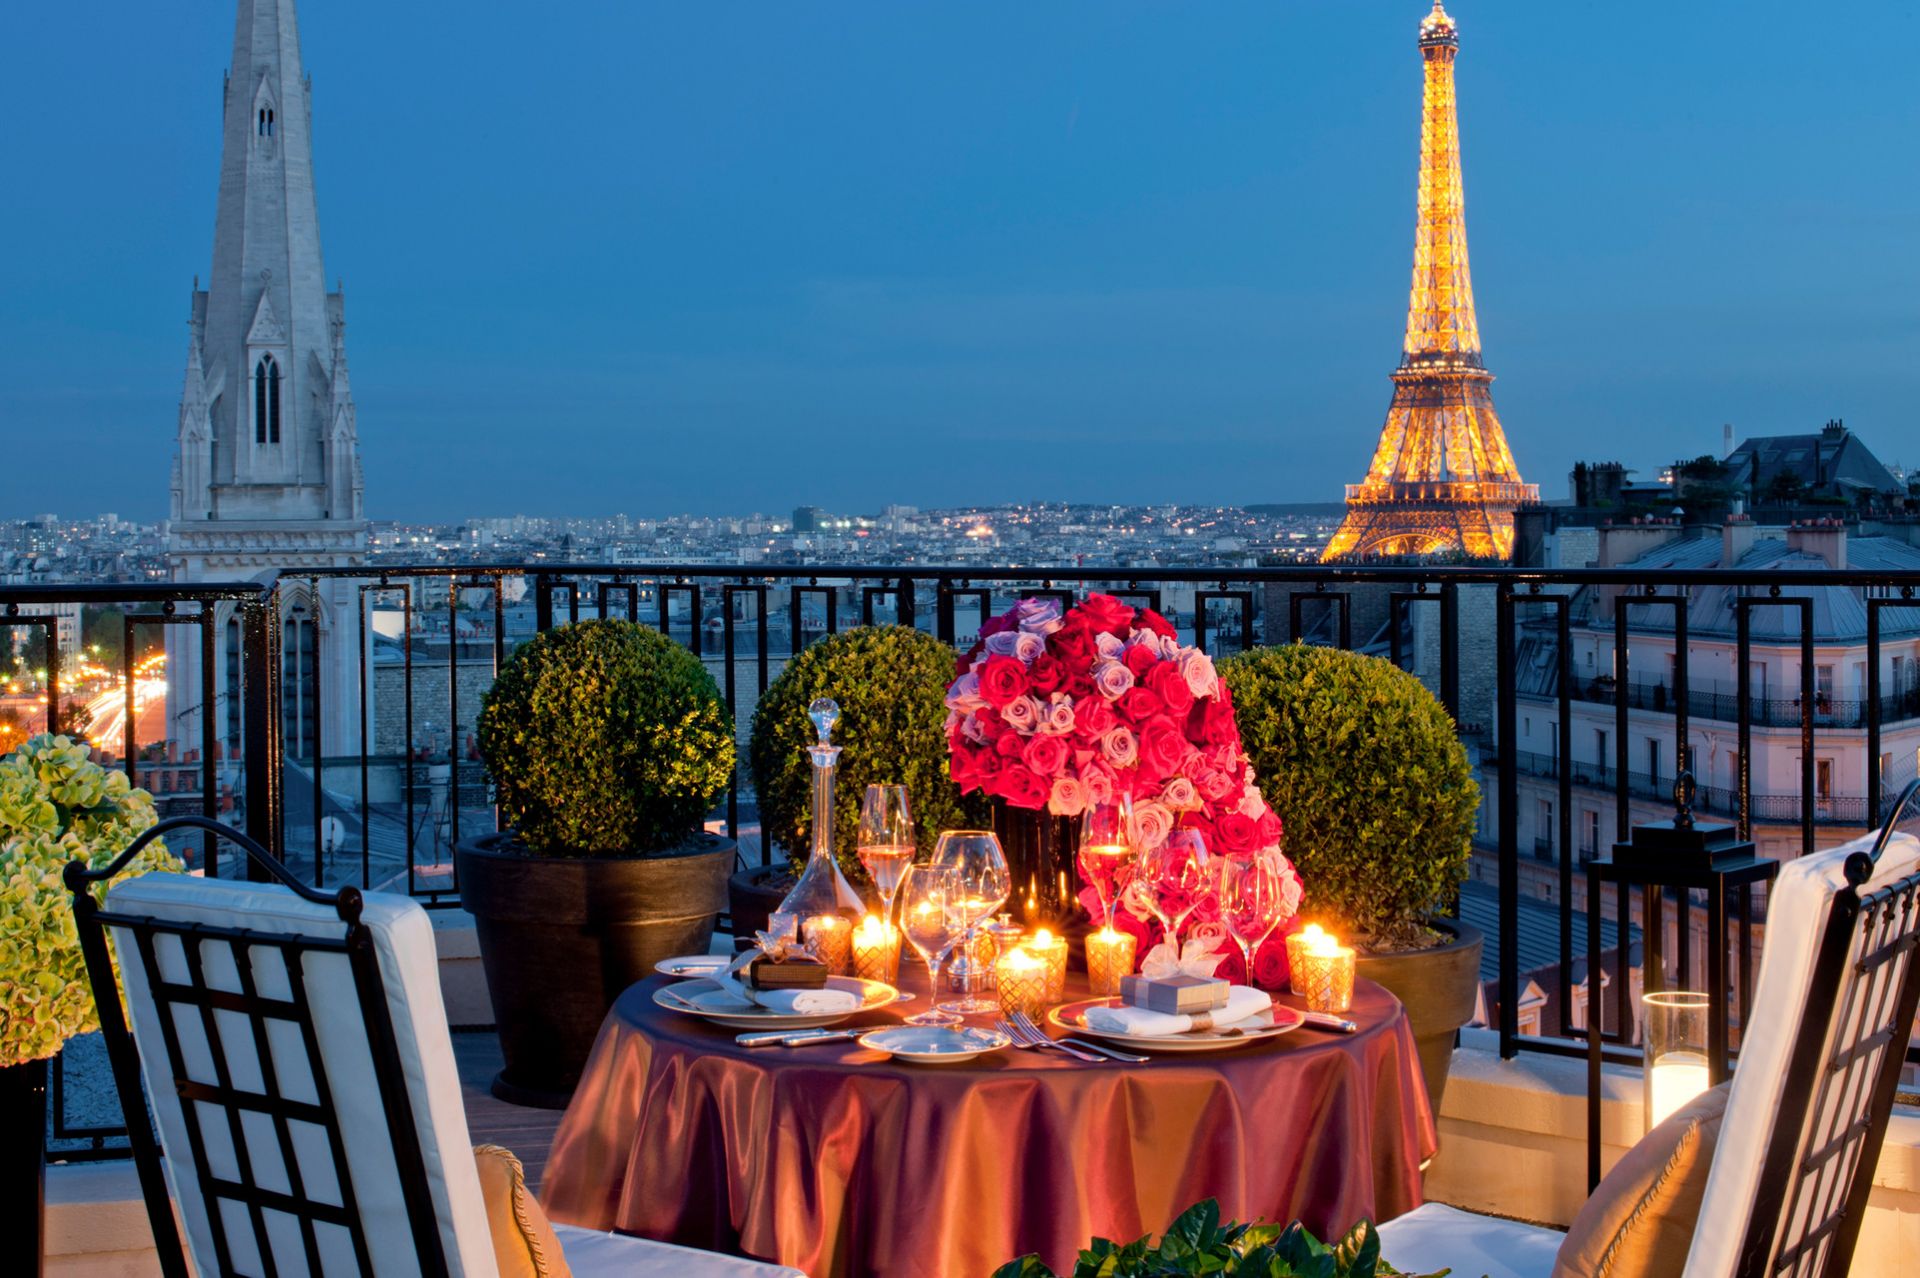 10 hôtels chic pour une nuit romantique inoubliable - Paris Select